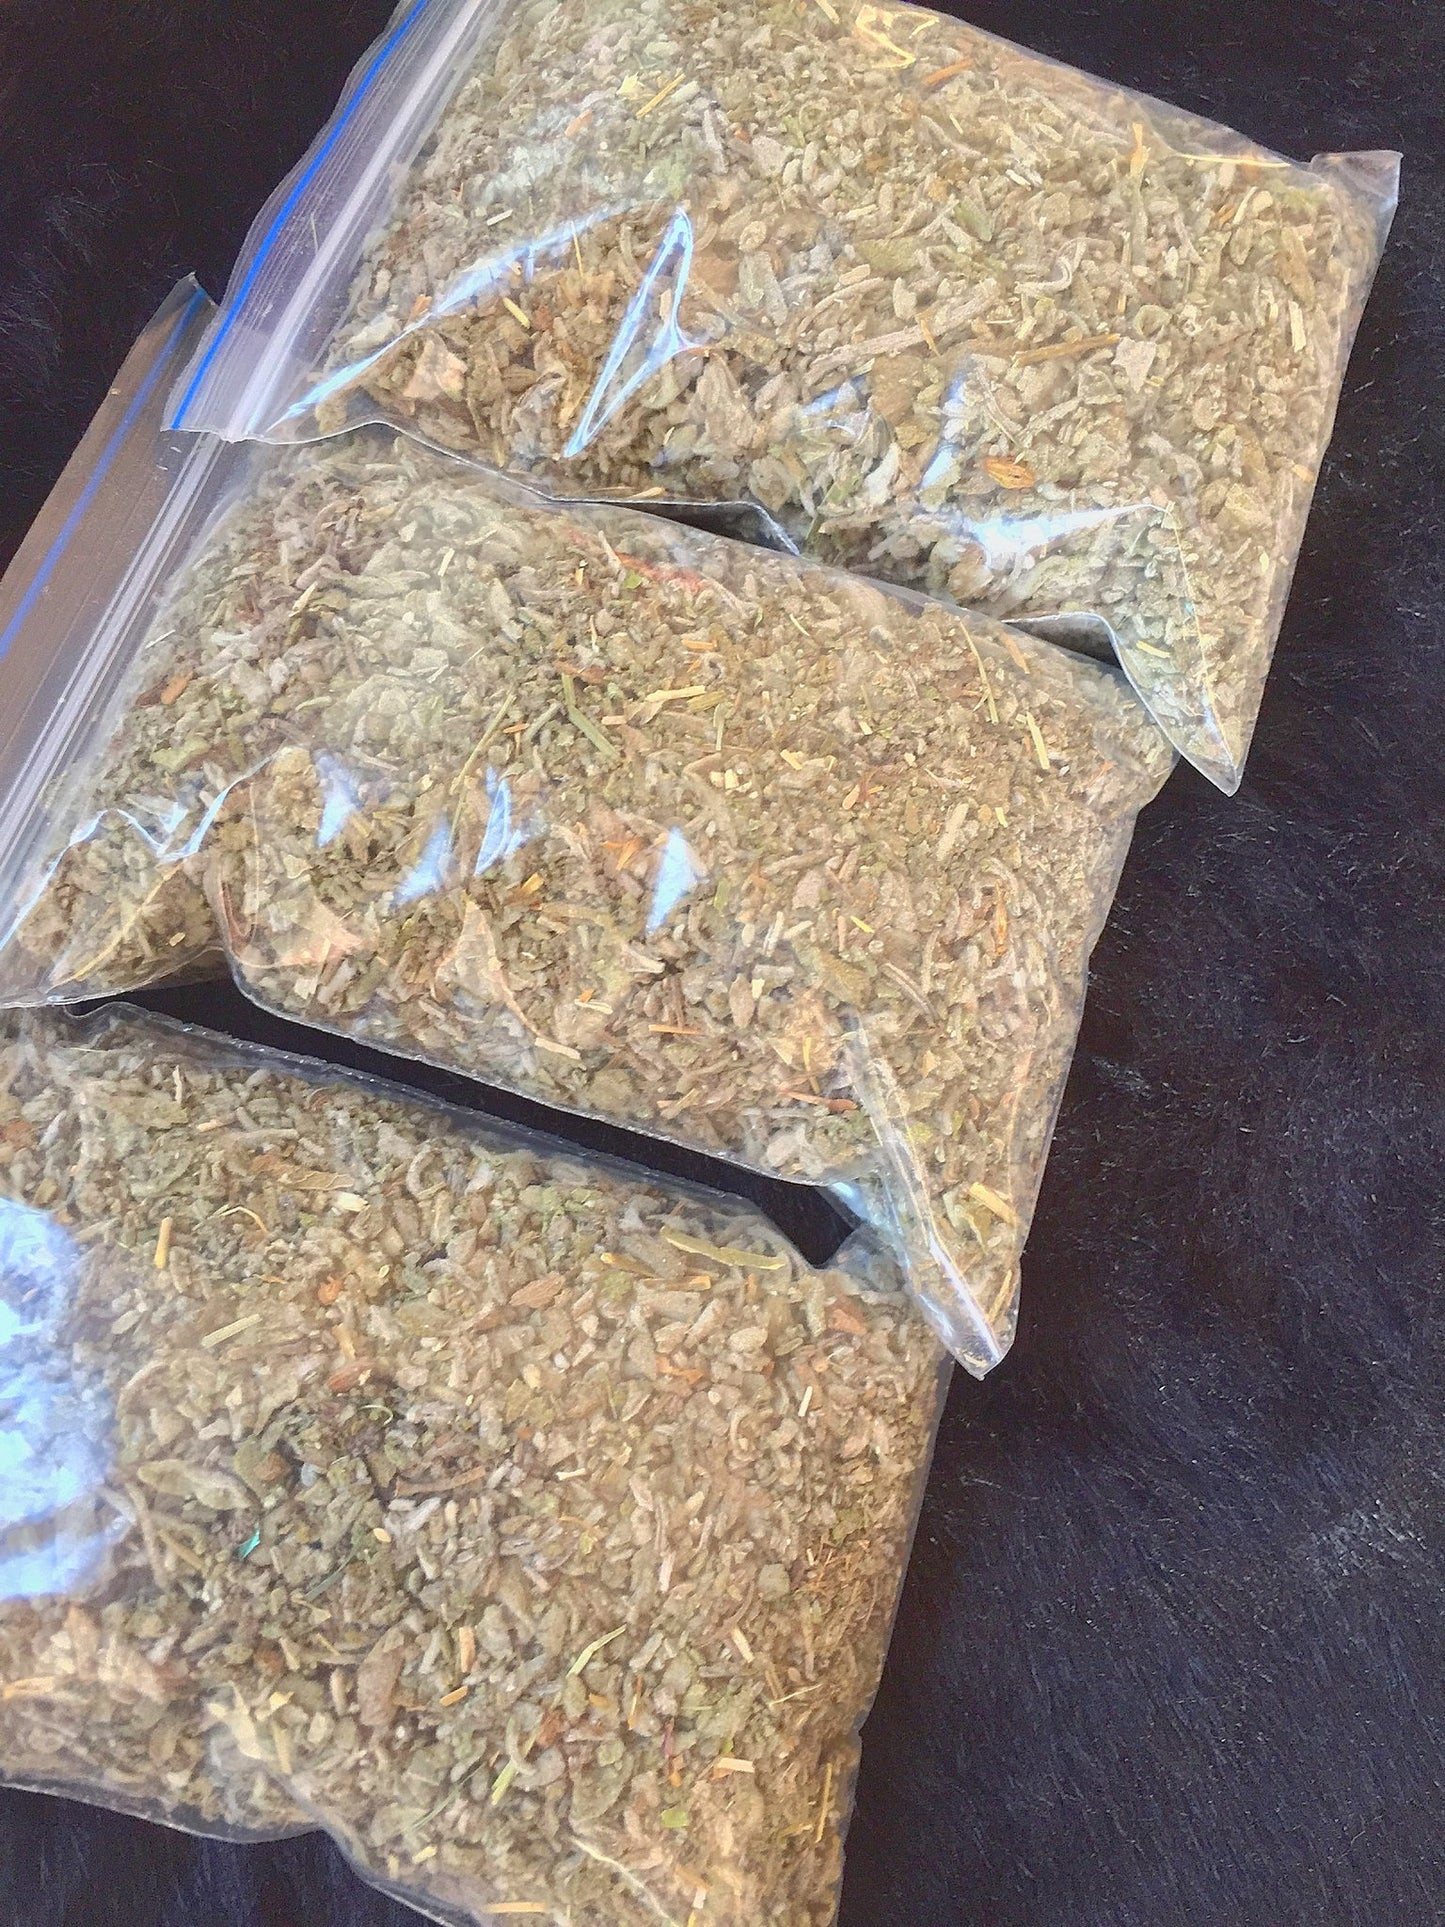 Indian Loose Sage Herb Cut - 1 Oz